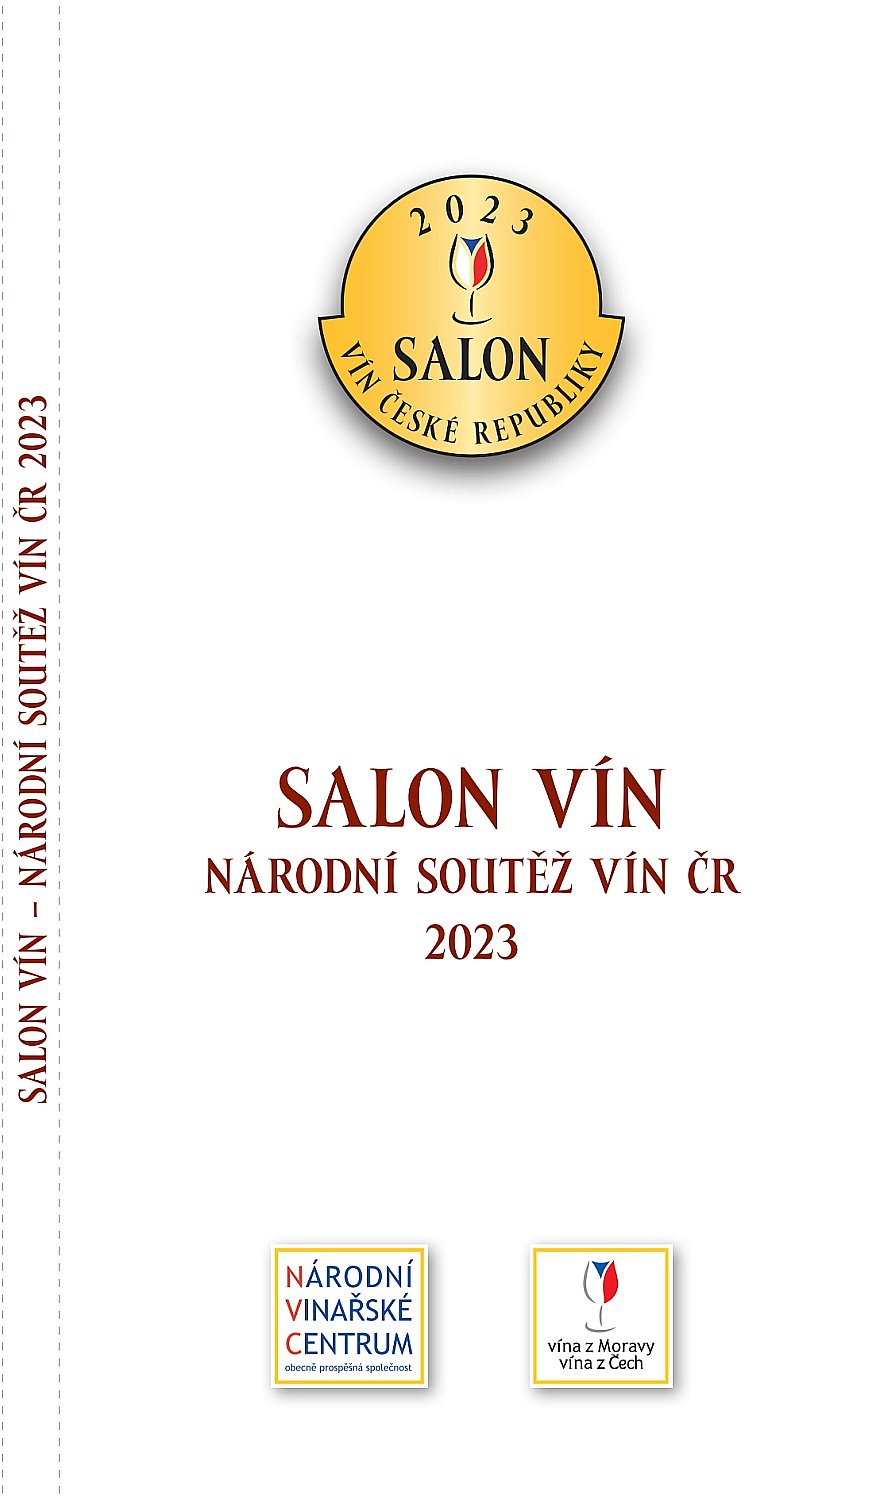 Katalog Salon vín České republiky 2023